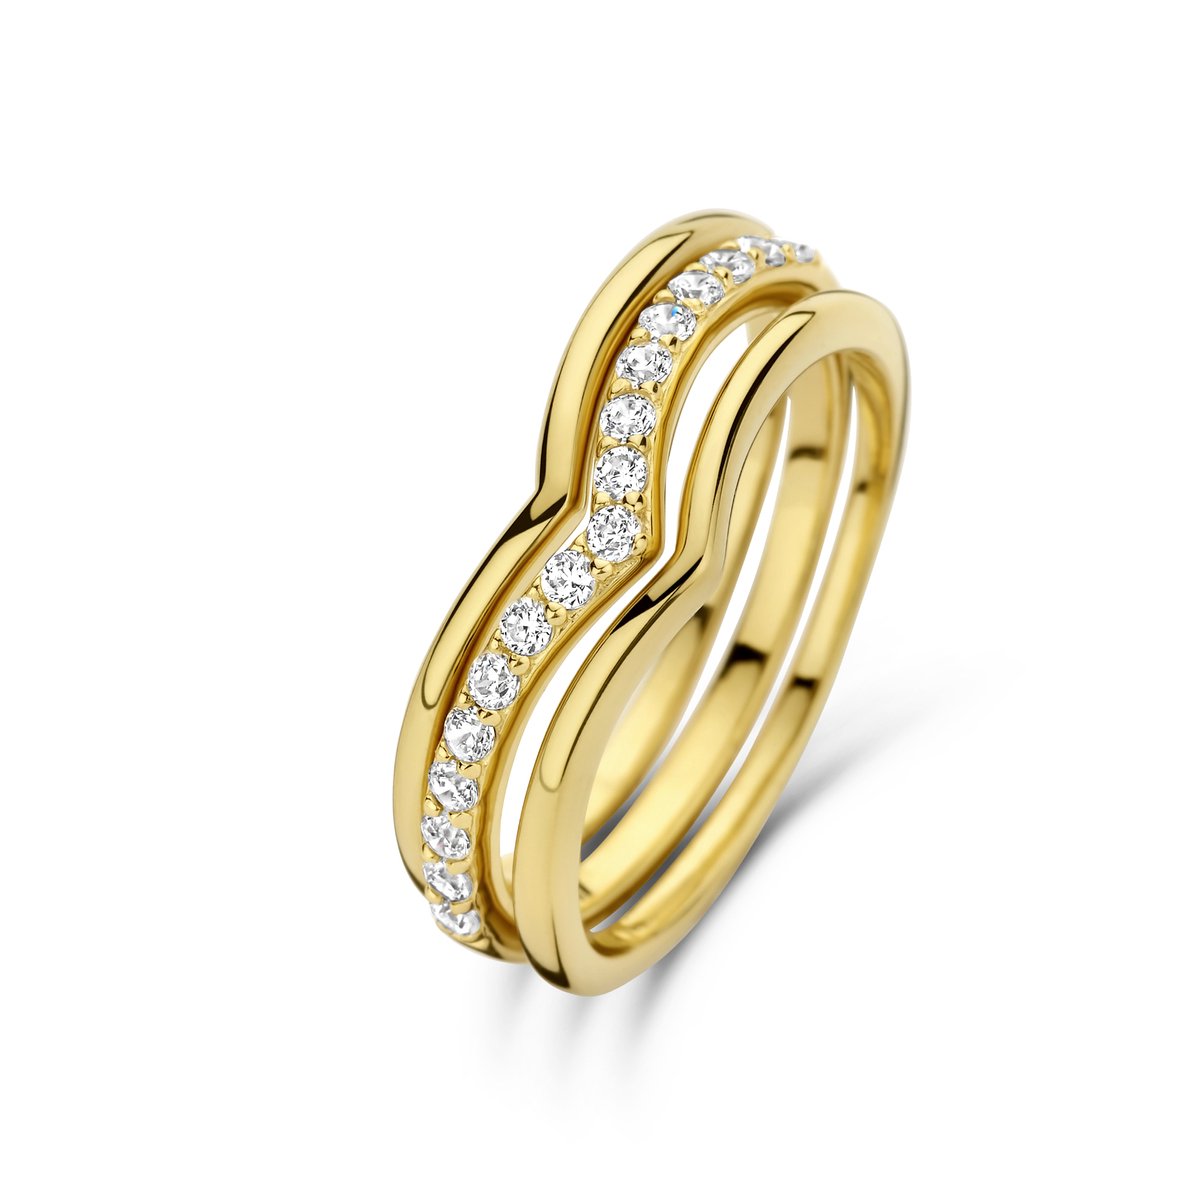 Parte Di Me Santa Maria Dames Ring Gouden plating/Zilver - Goud - 16.00 mm / maat 50